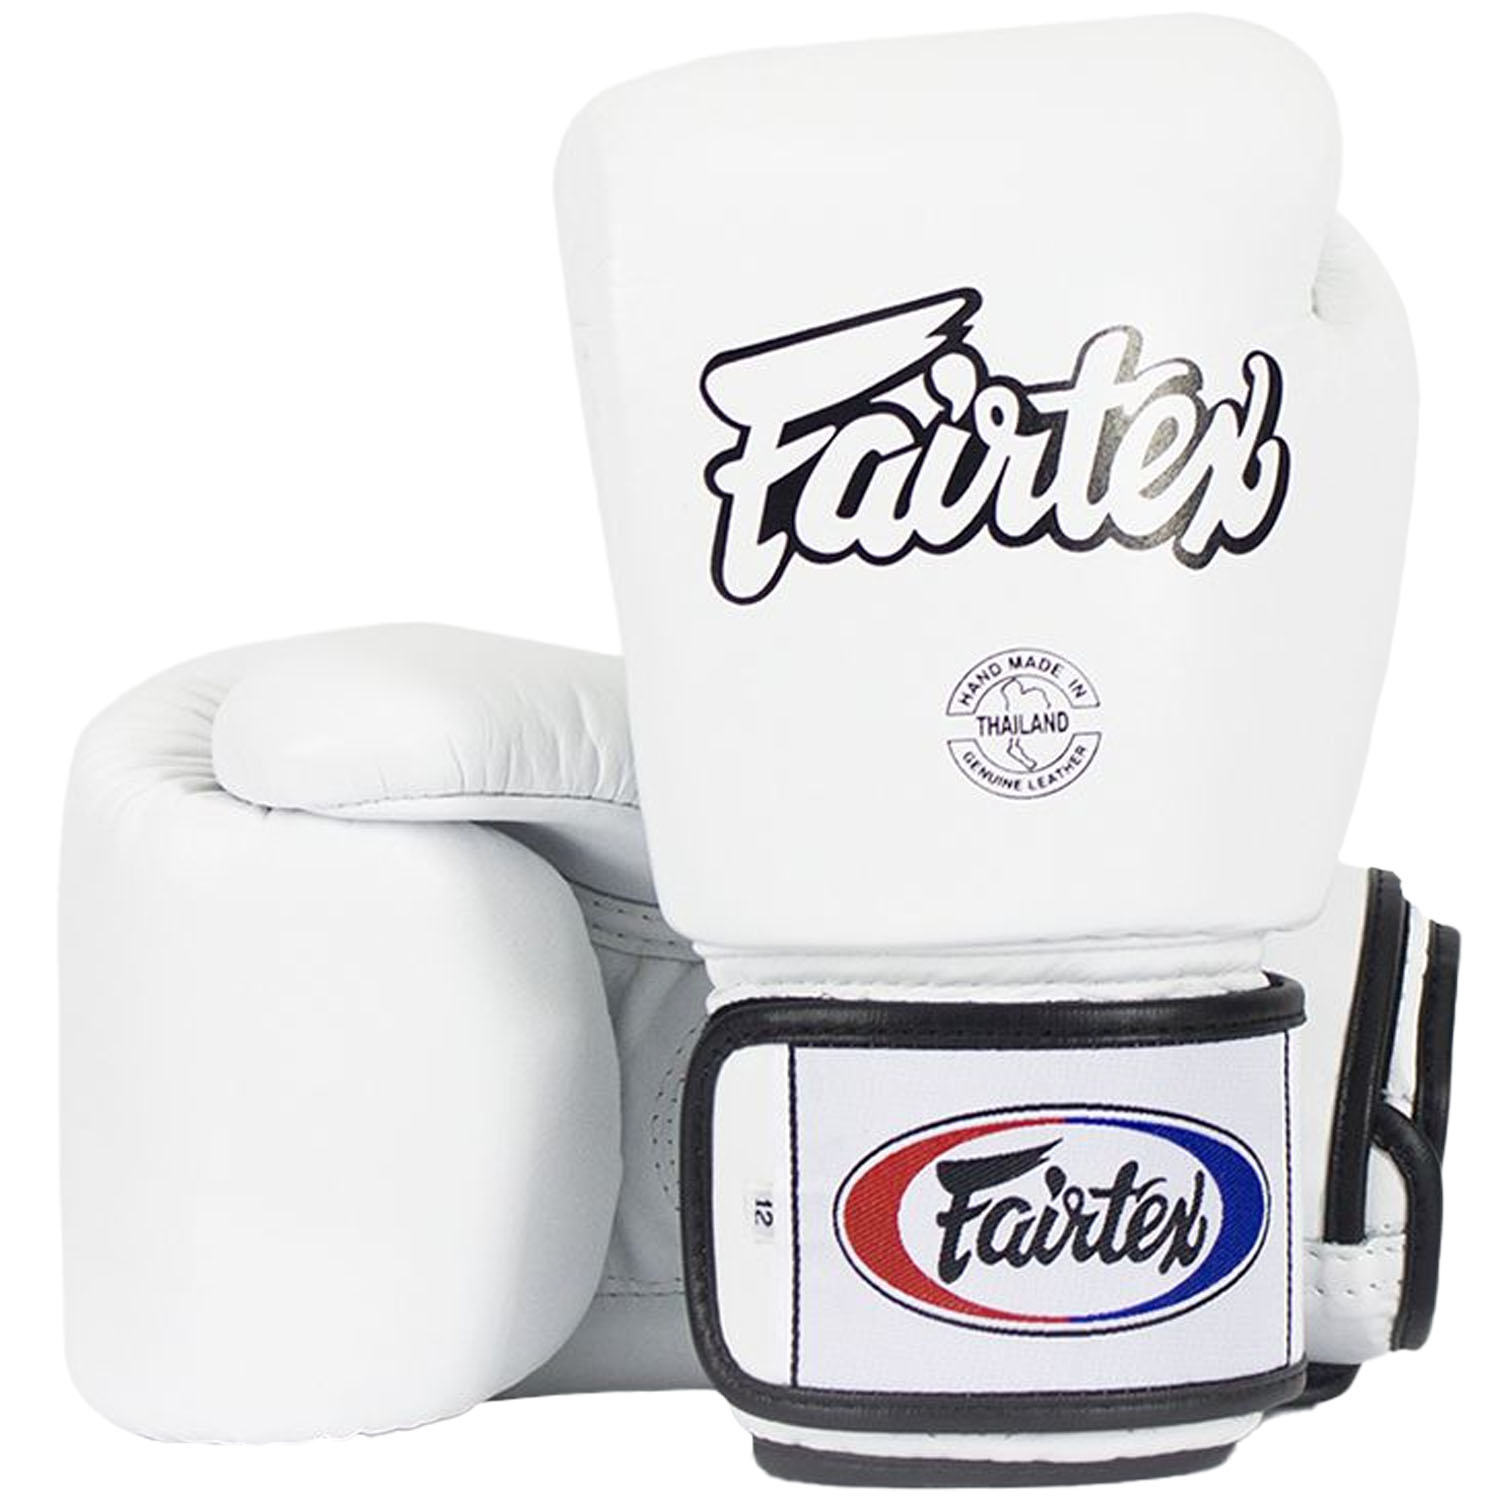 Fairtex Boxing Gloves, BGV1 AIR, white, 14 Oz